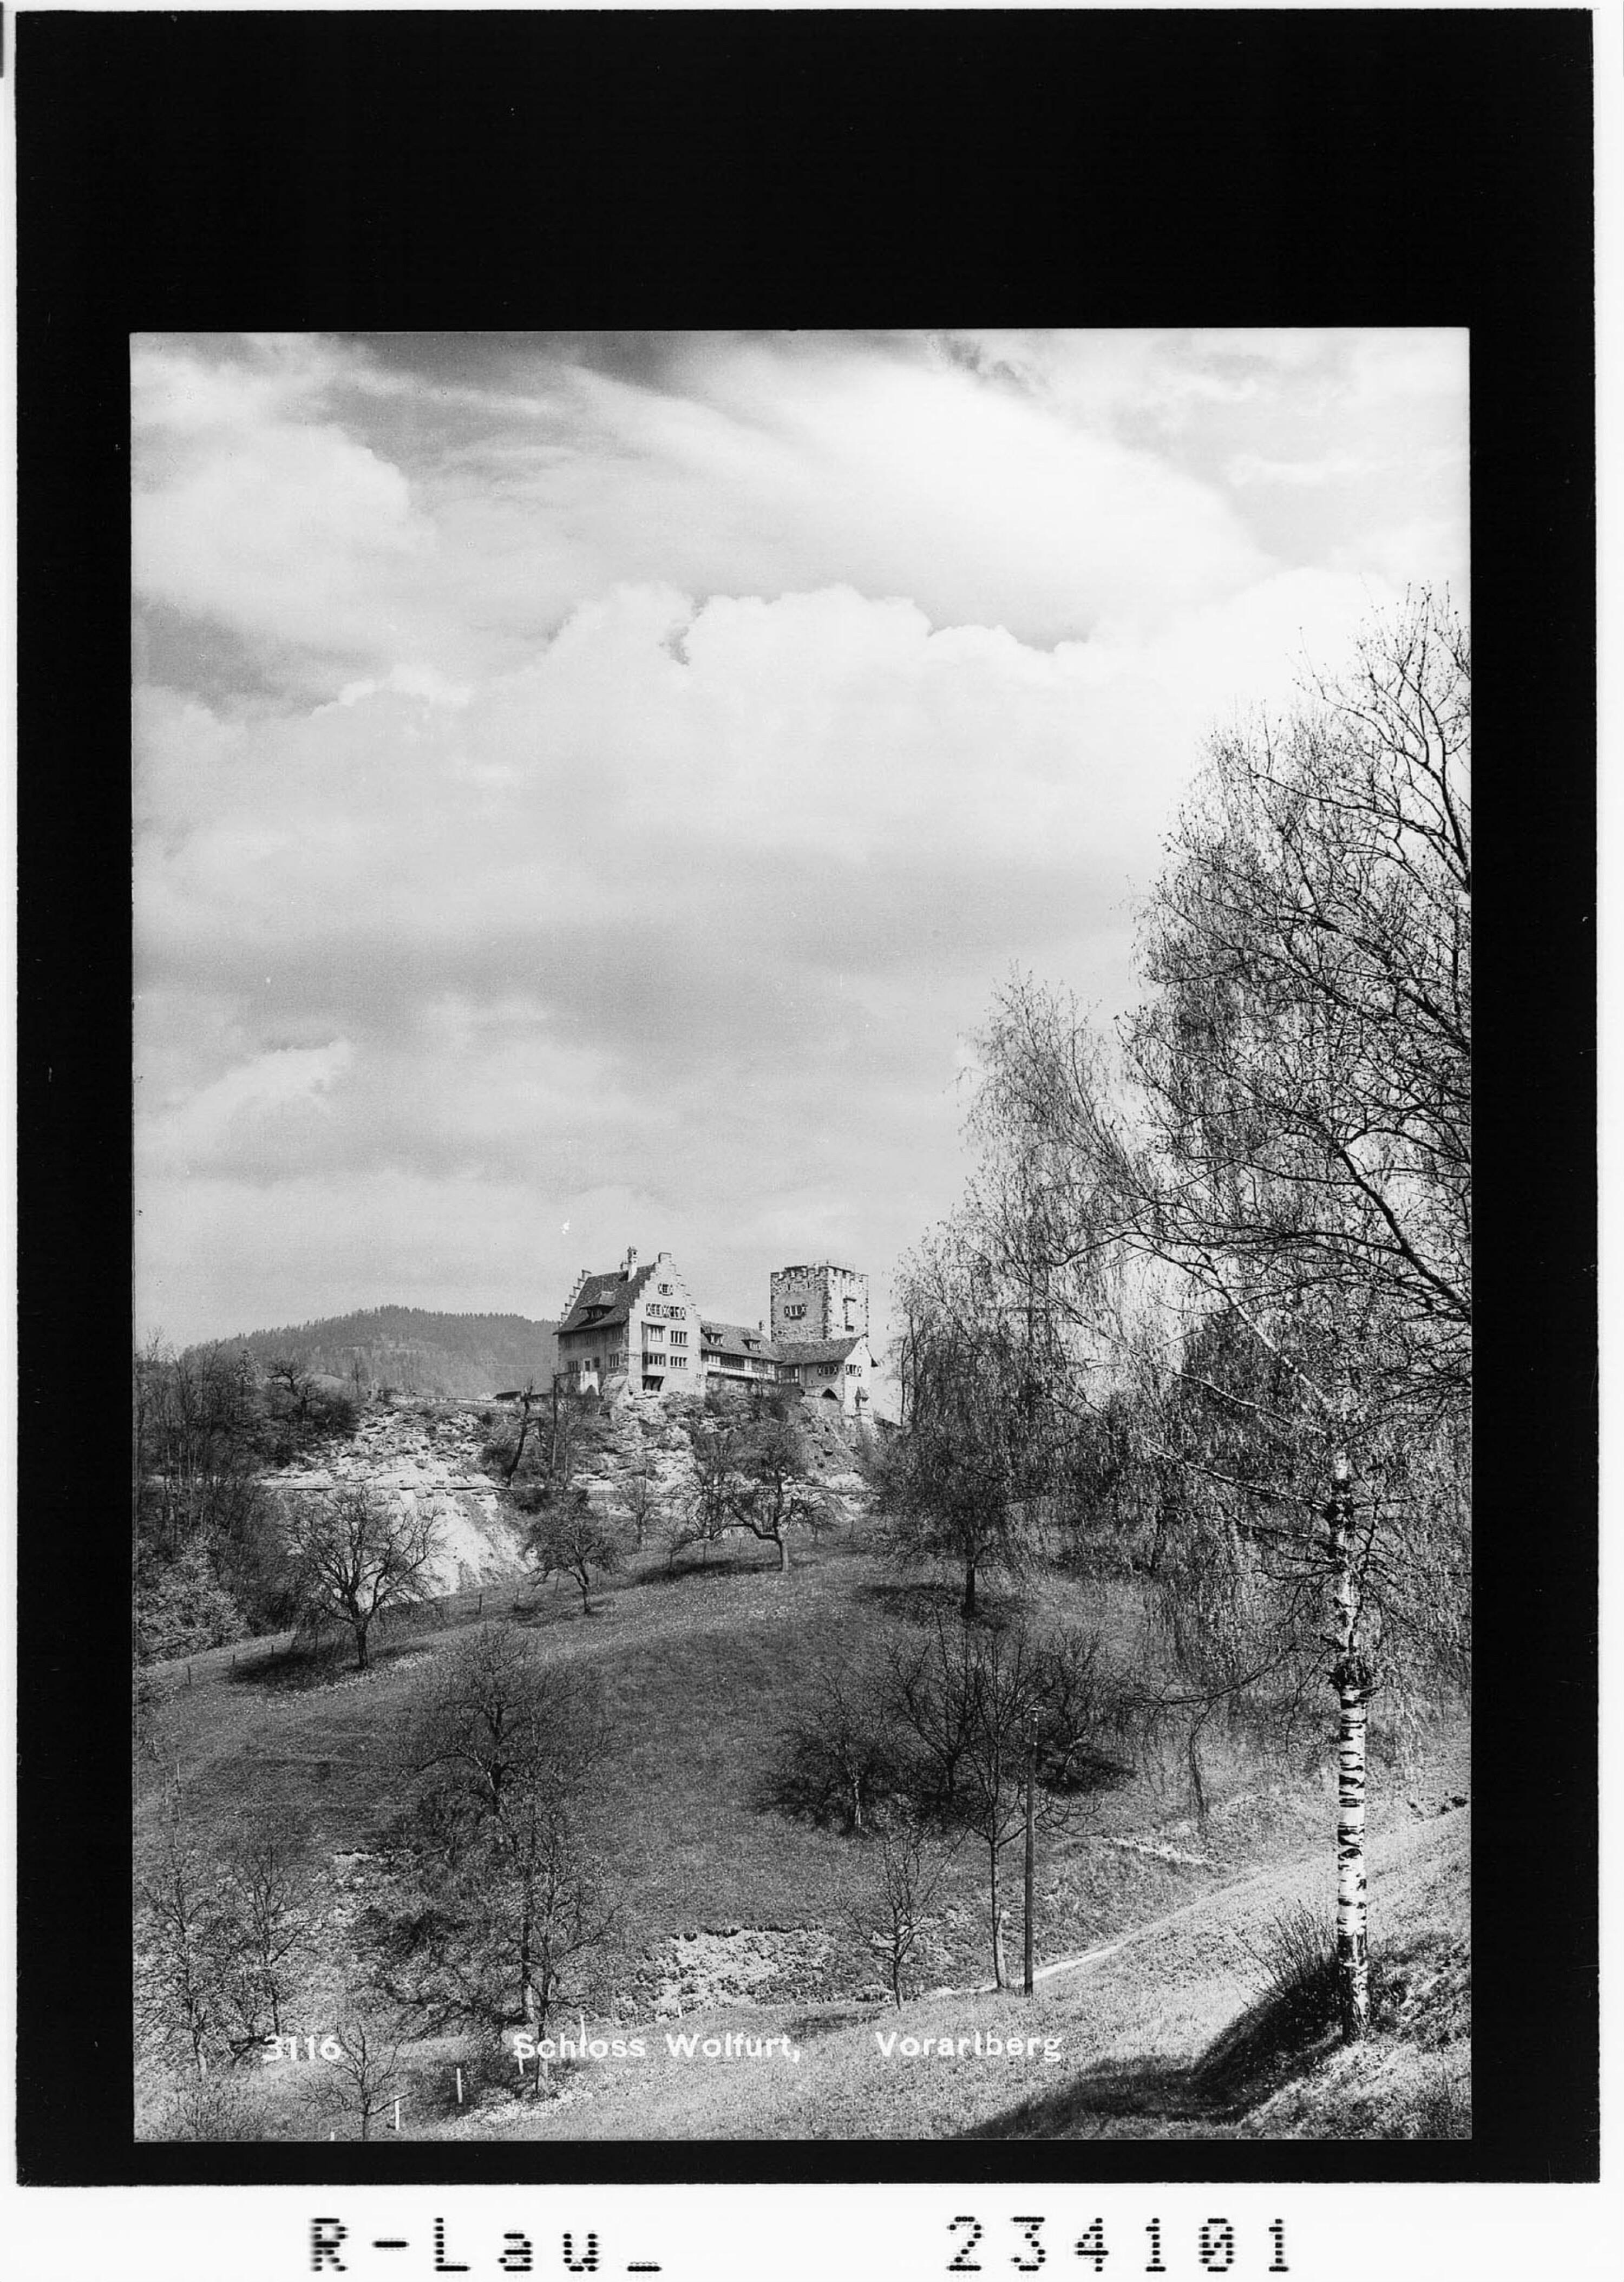 Schloss Wolfurt - Vorarlberg></div>


    <hr>
    <div class=